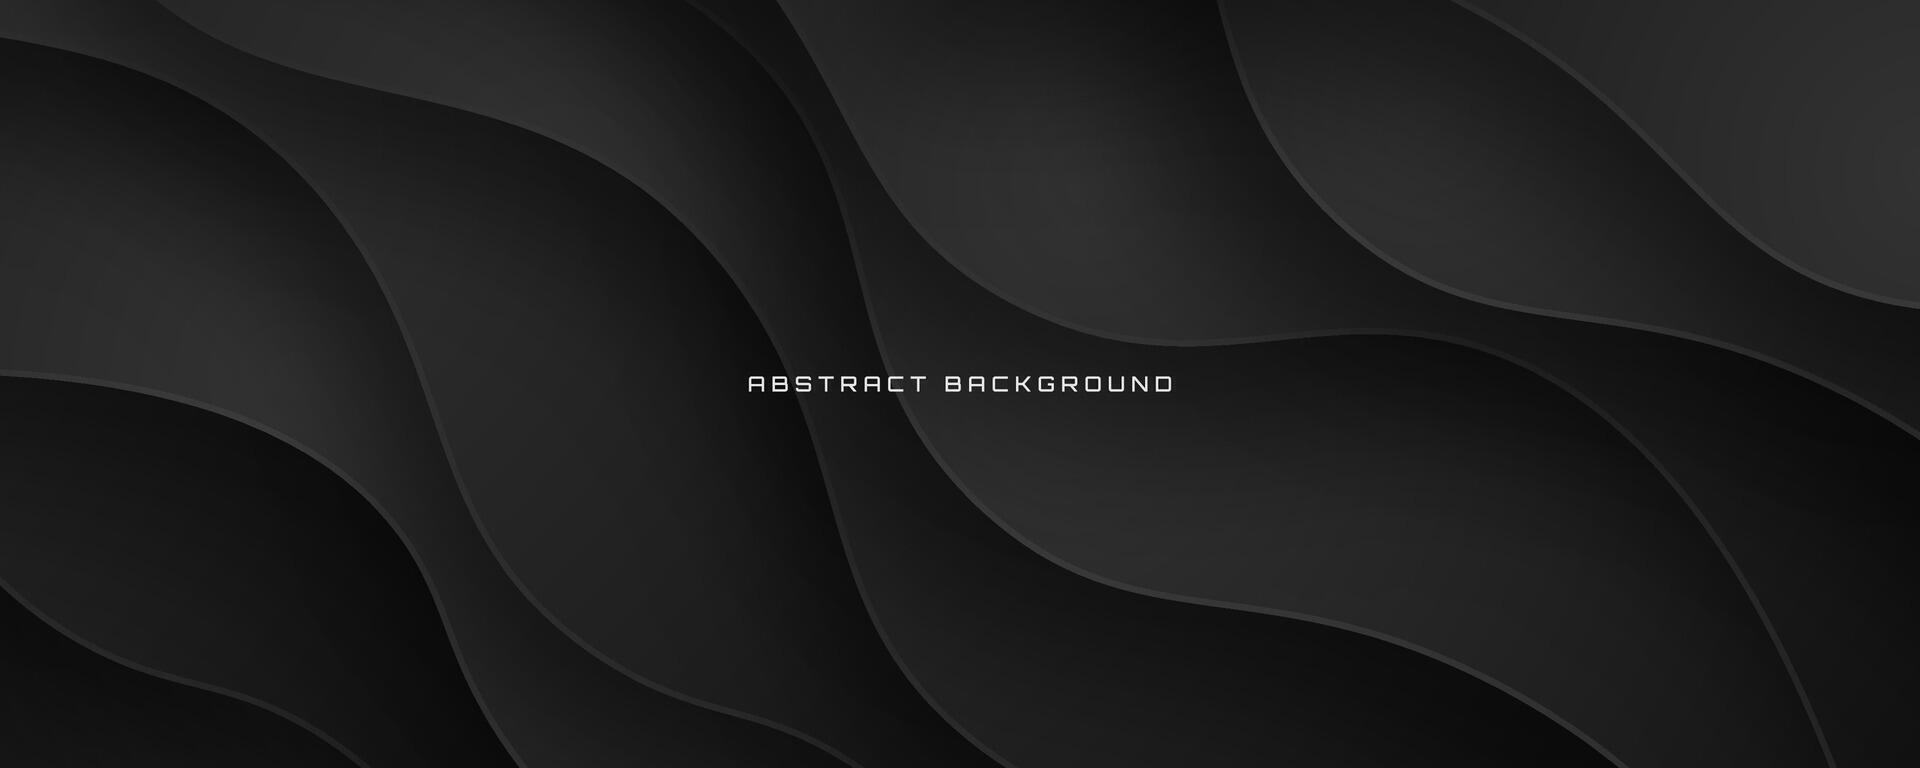 3d svart geometrisk abstrakt bakgrund överlappning lager på mörk Plats med vågor form dekoration. minimalistisk modern grafisk design element Skära ut stil begrepp för baner, flygblad, kort, eller broschyr omslag vektor